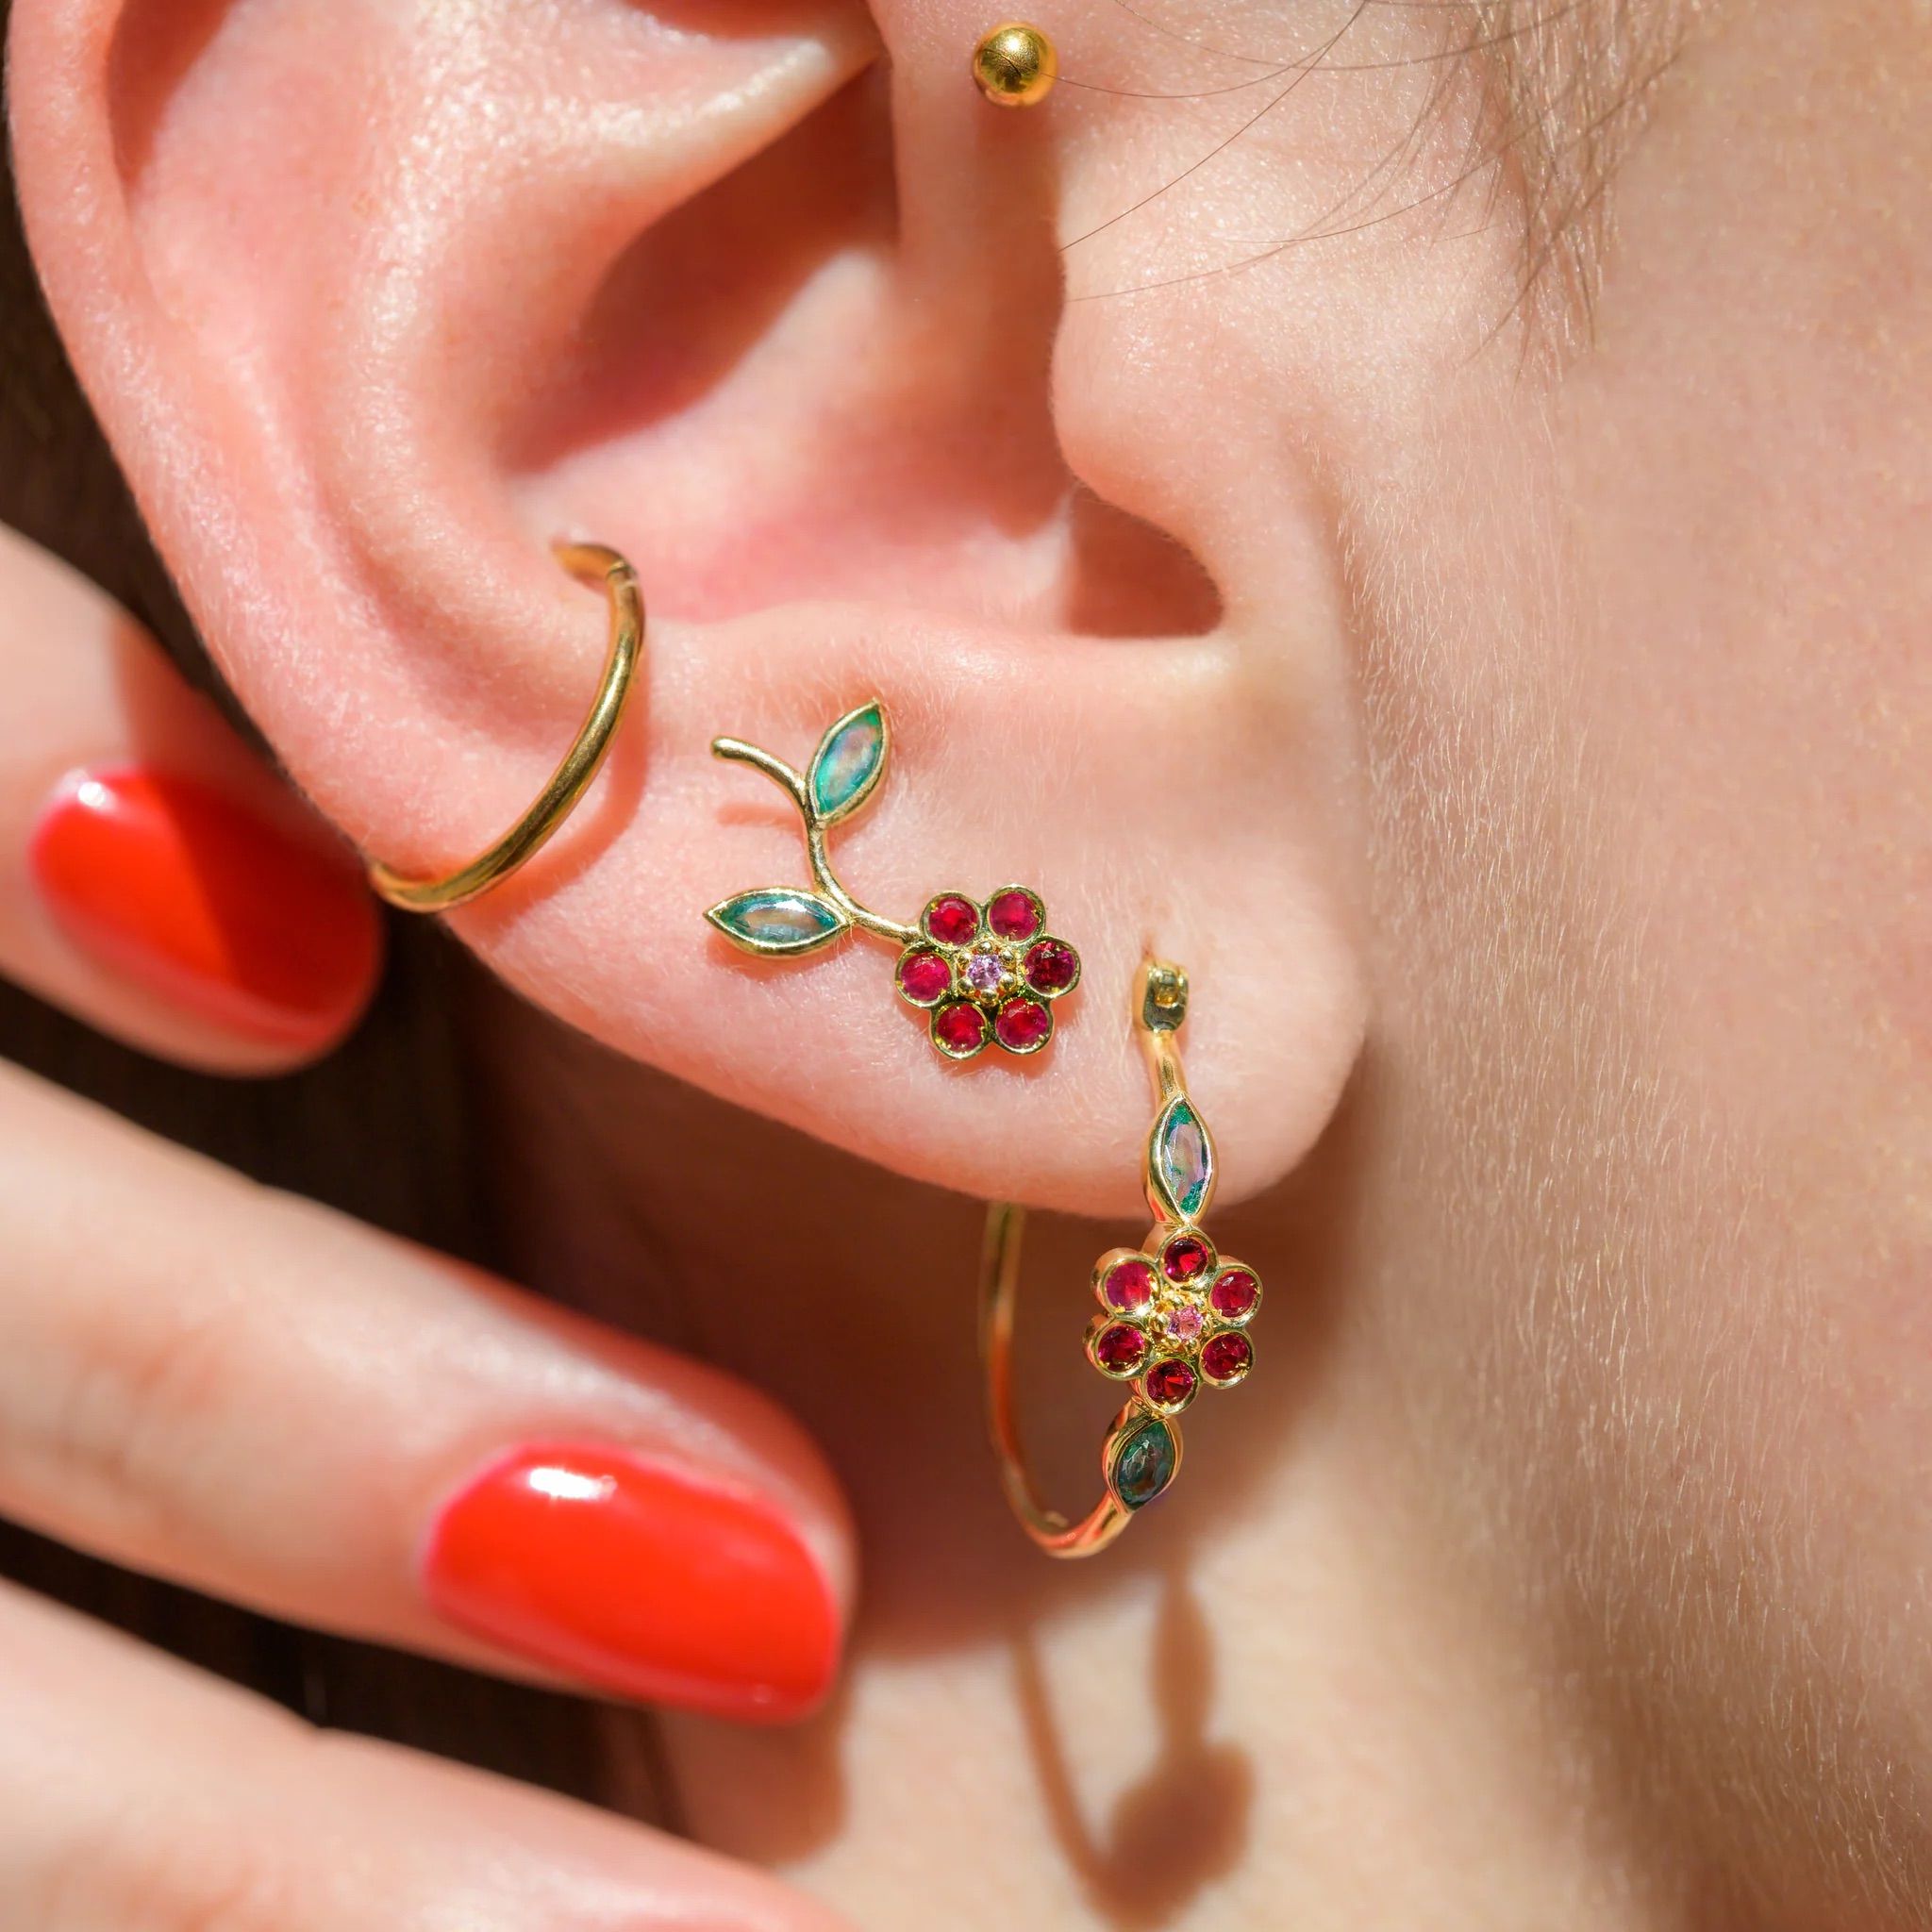 Miniflower earring - Sophie d'Agon